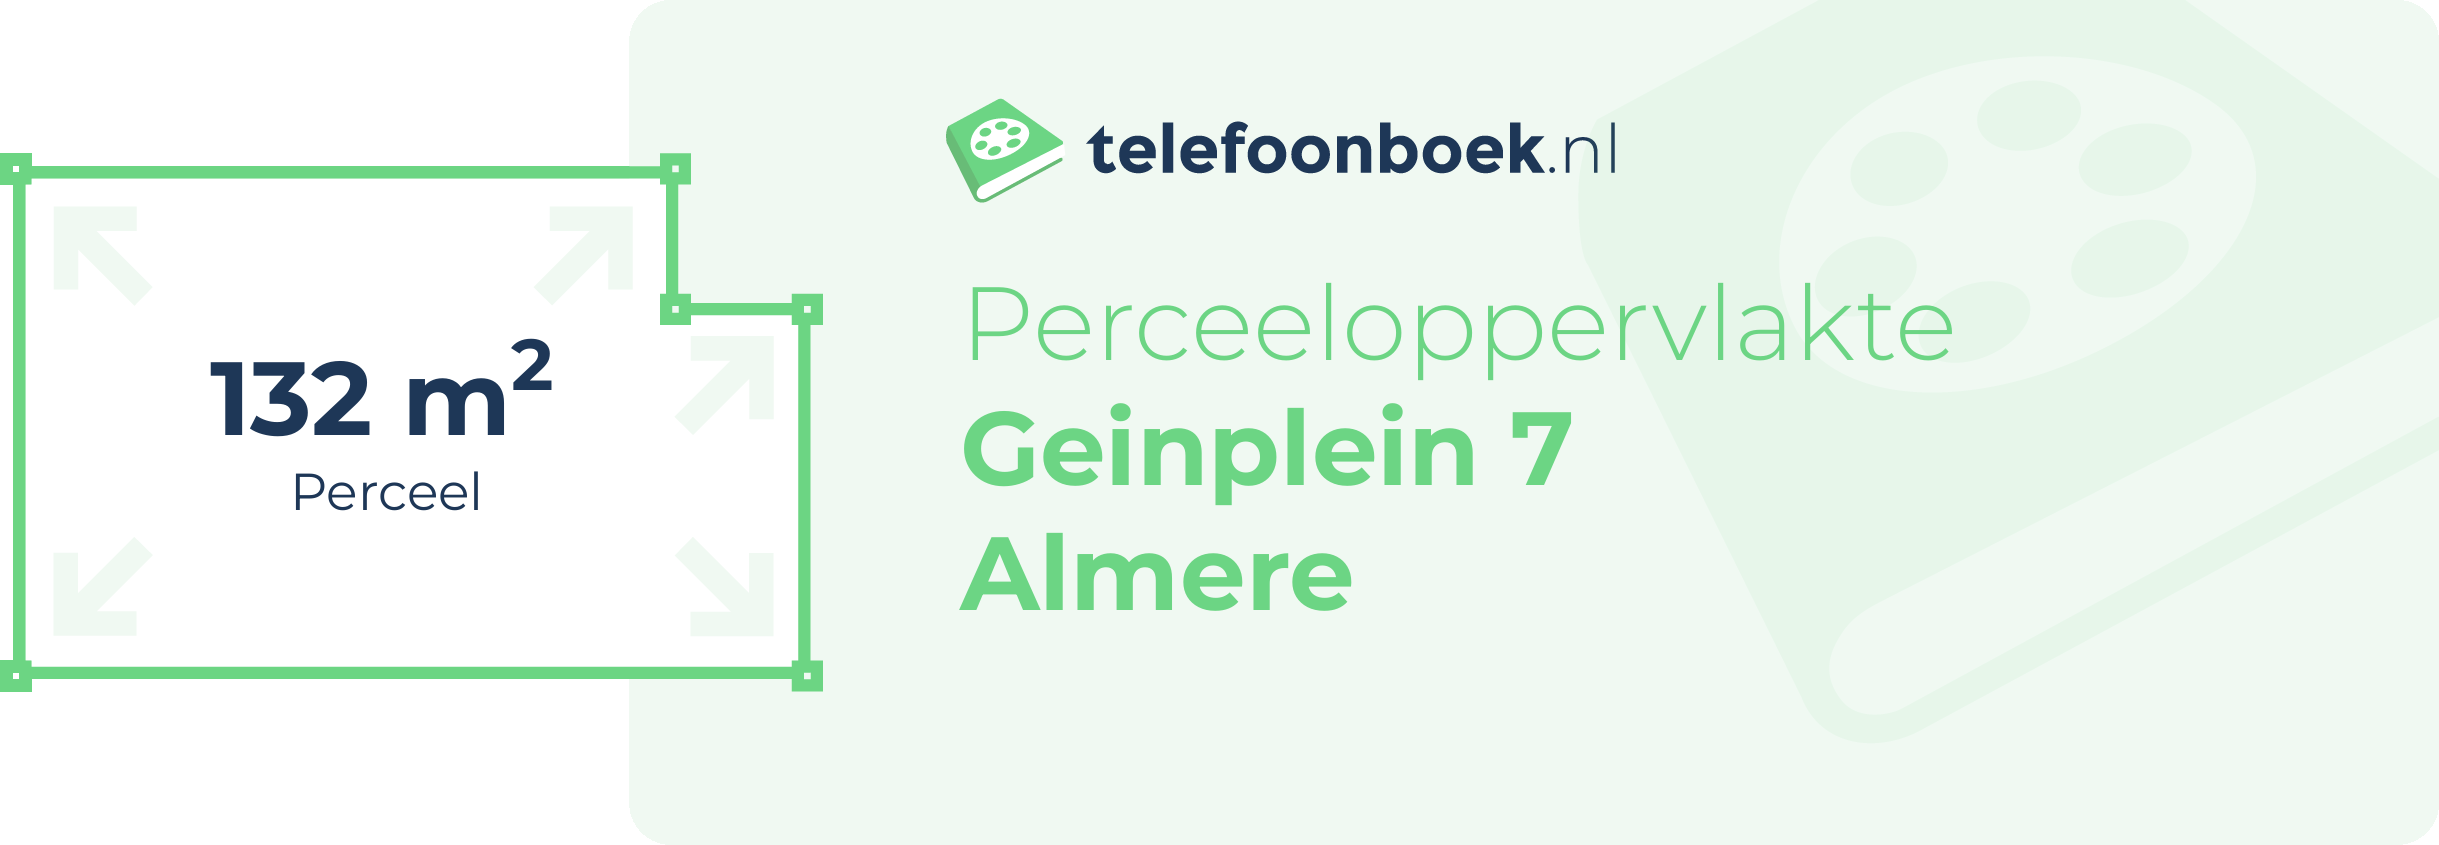 Perceeloppervlakte Geinplein 7 Almere